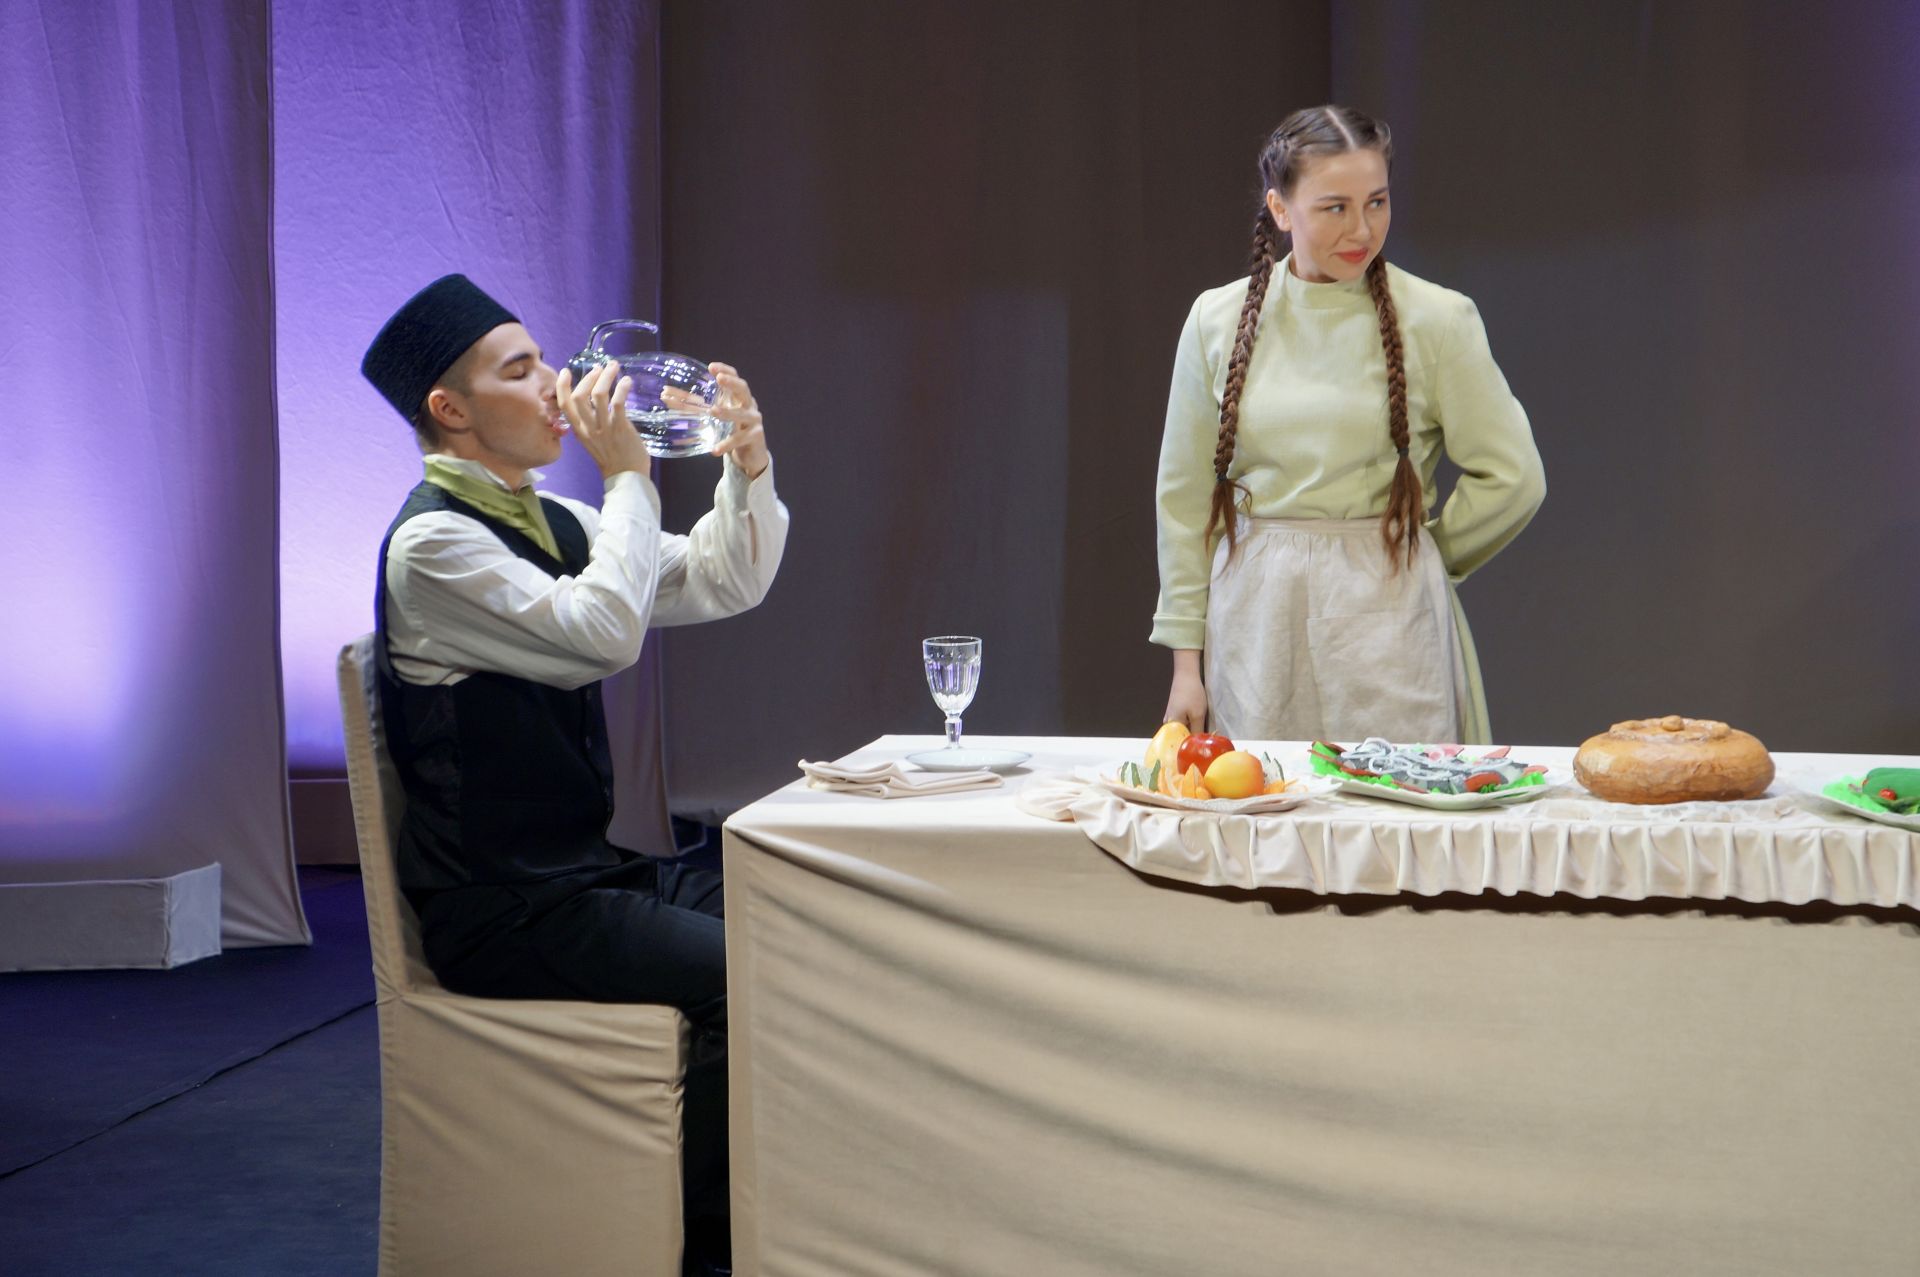 Премьера в татарском драмтеатре: впервые на сцене финал известной драмы был изменен